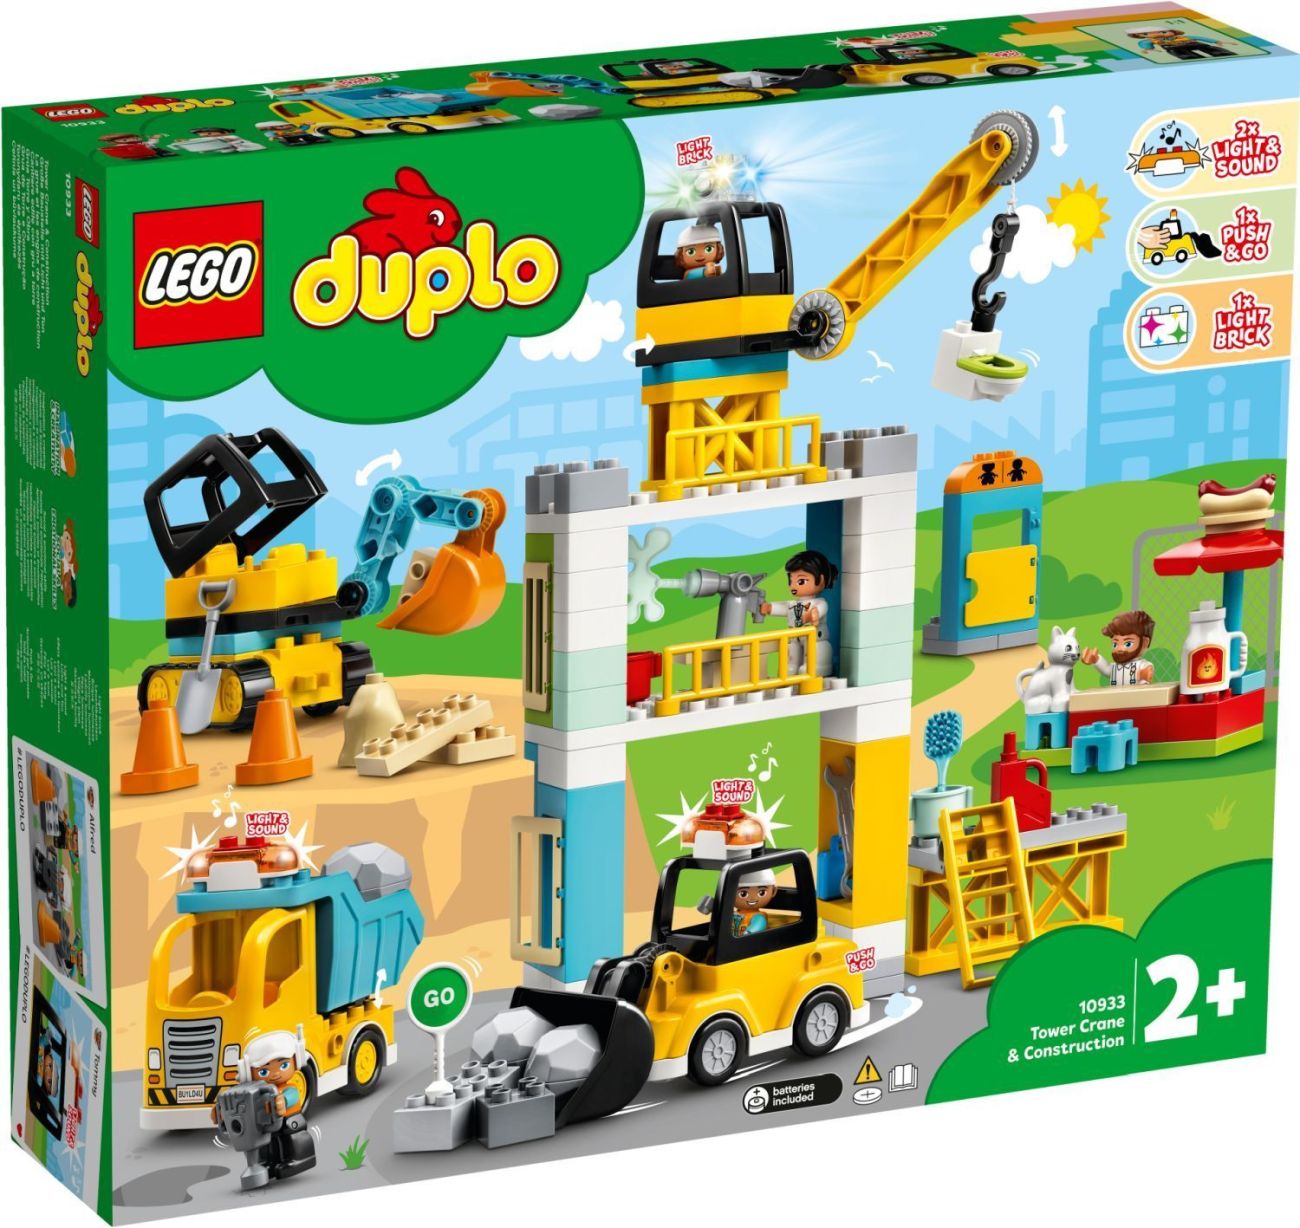 LEGO Duplo Sommer Sets 2020: Alle Bilder und Infos